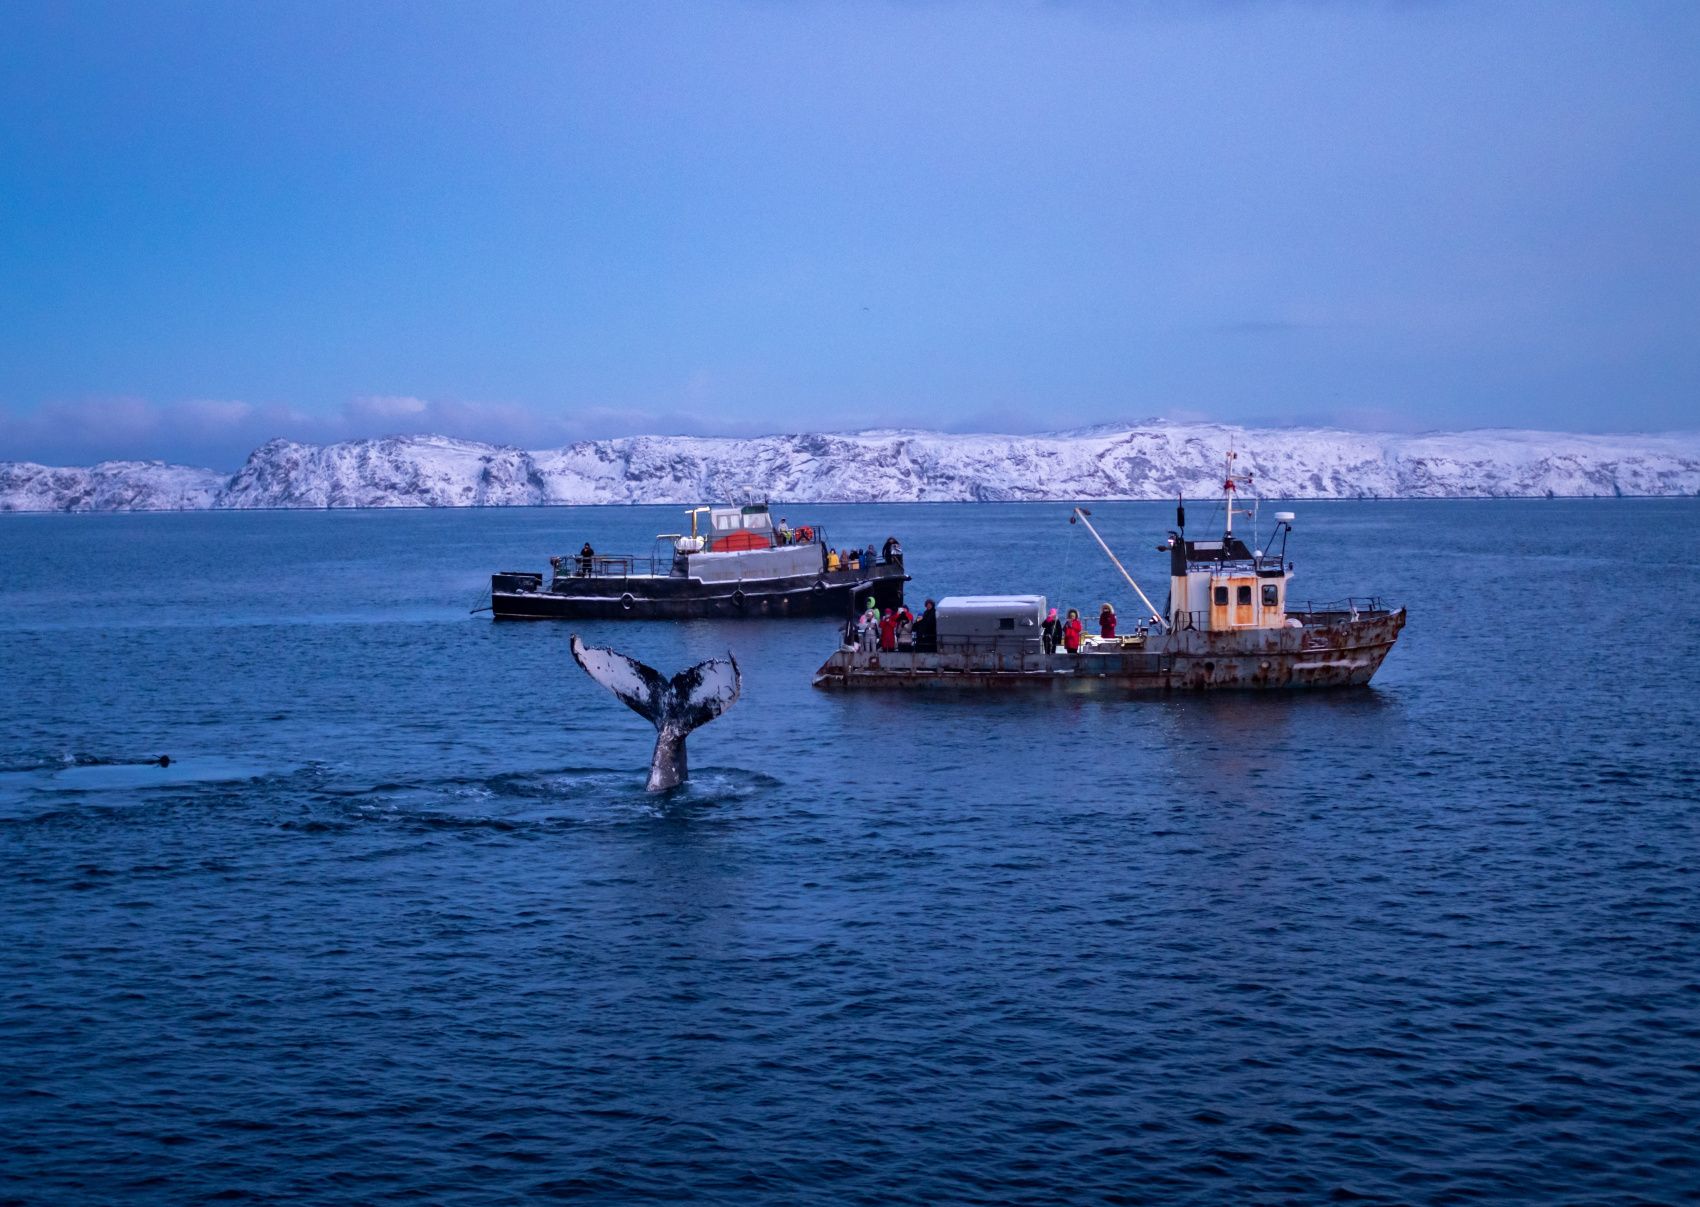 В Арктику вместе с фотографом: Териберка, киты, сияние и снегоходы